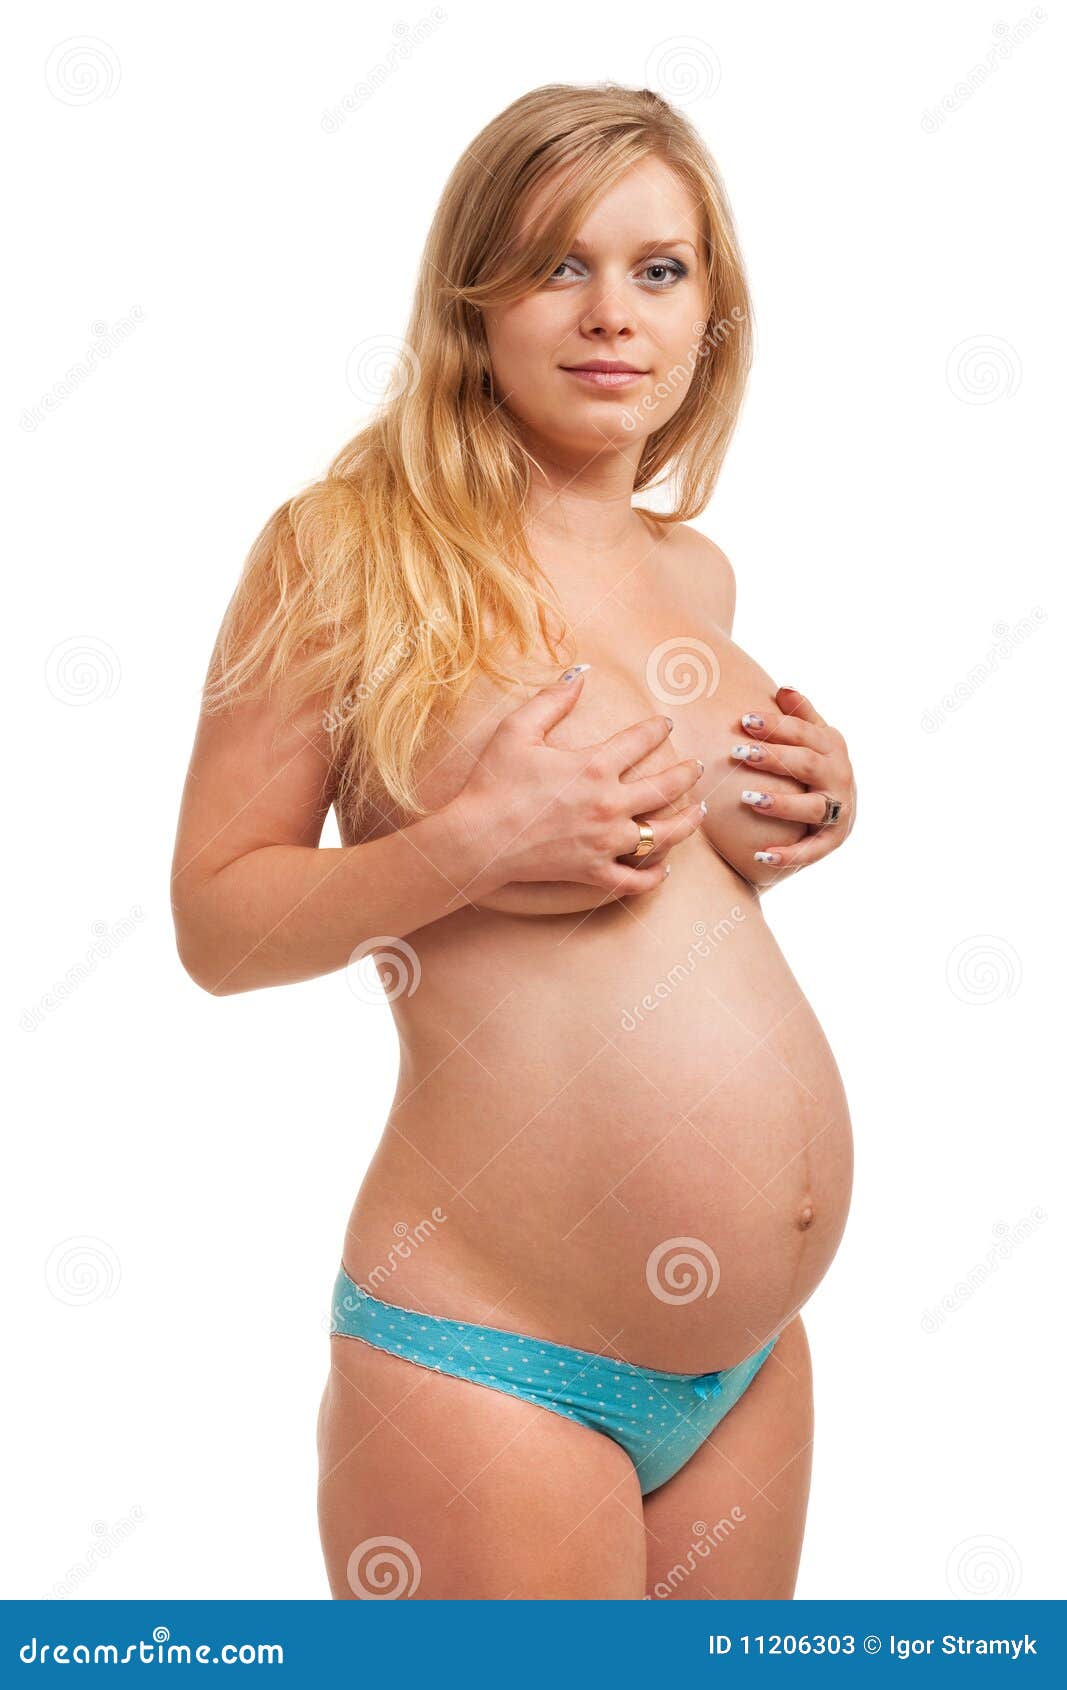 грудь беременной на начальной стадии фото 98